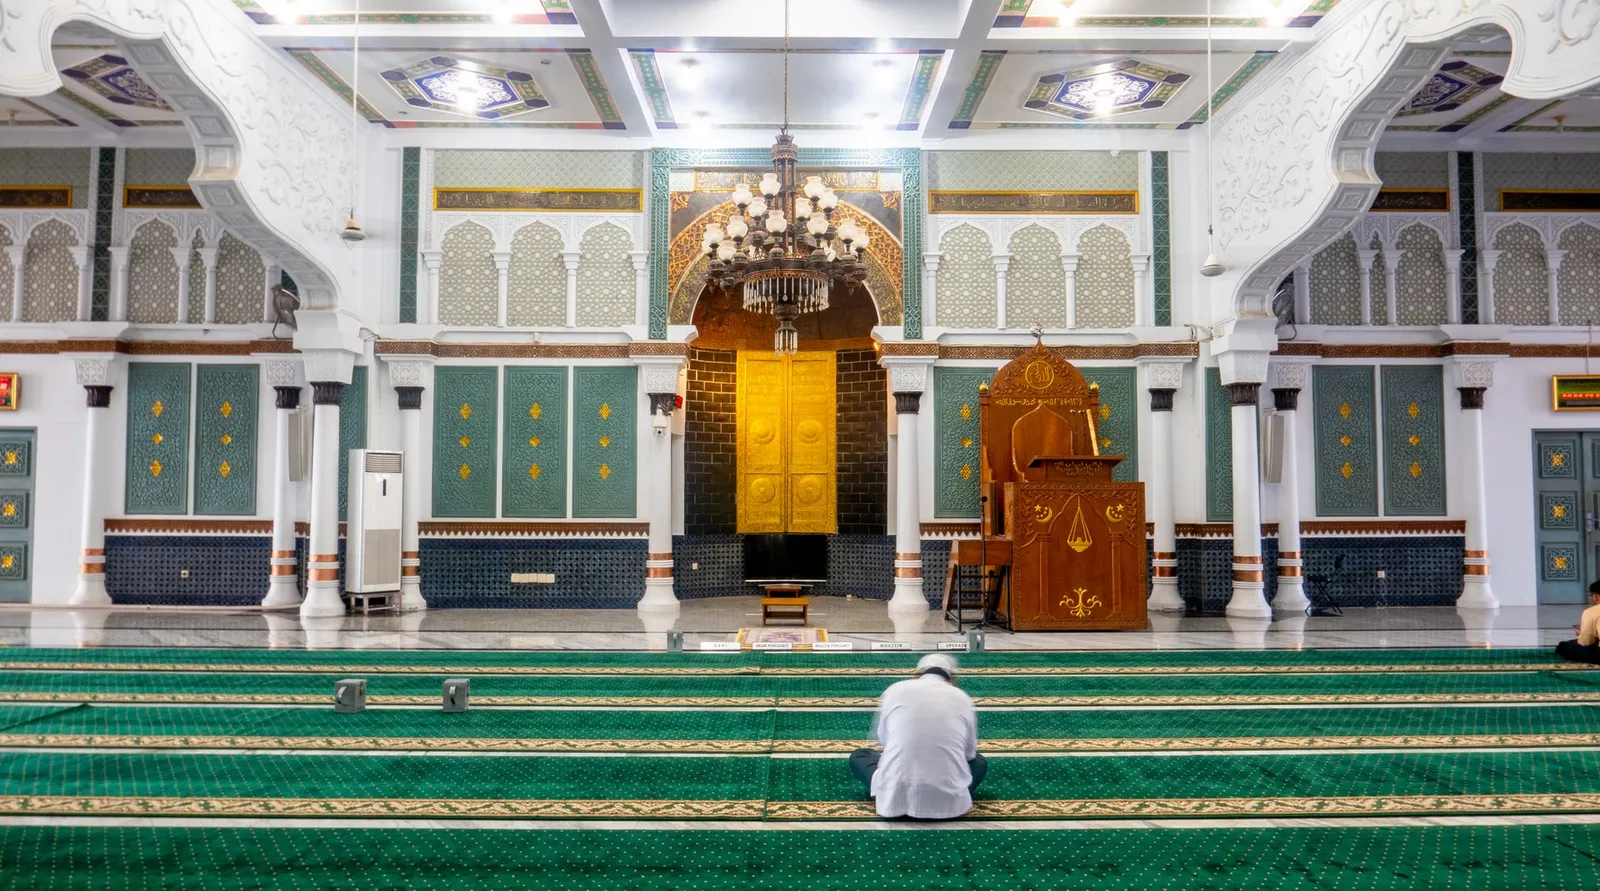 Sempurnakan Ibadah, Ini 10 Amalan Sunnah di Bulan Ramadan